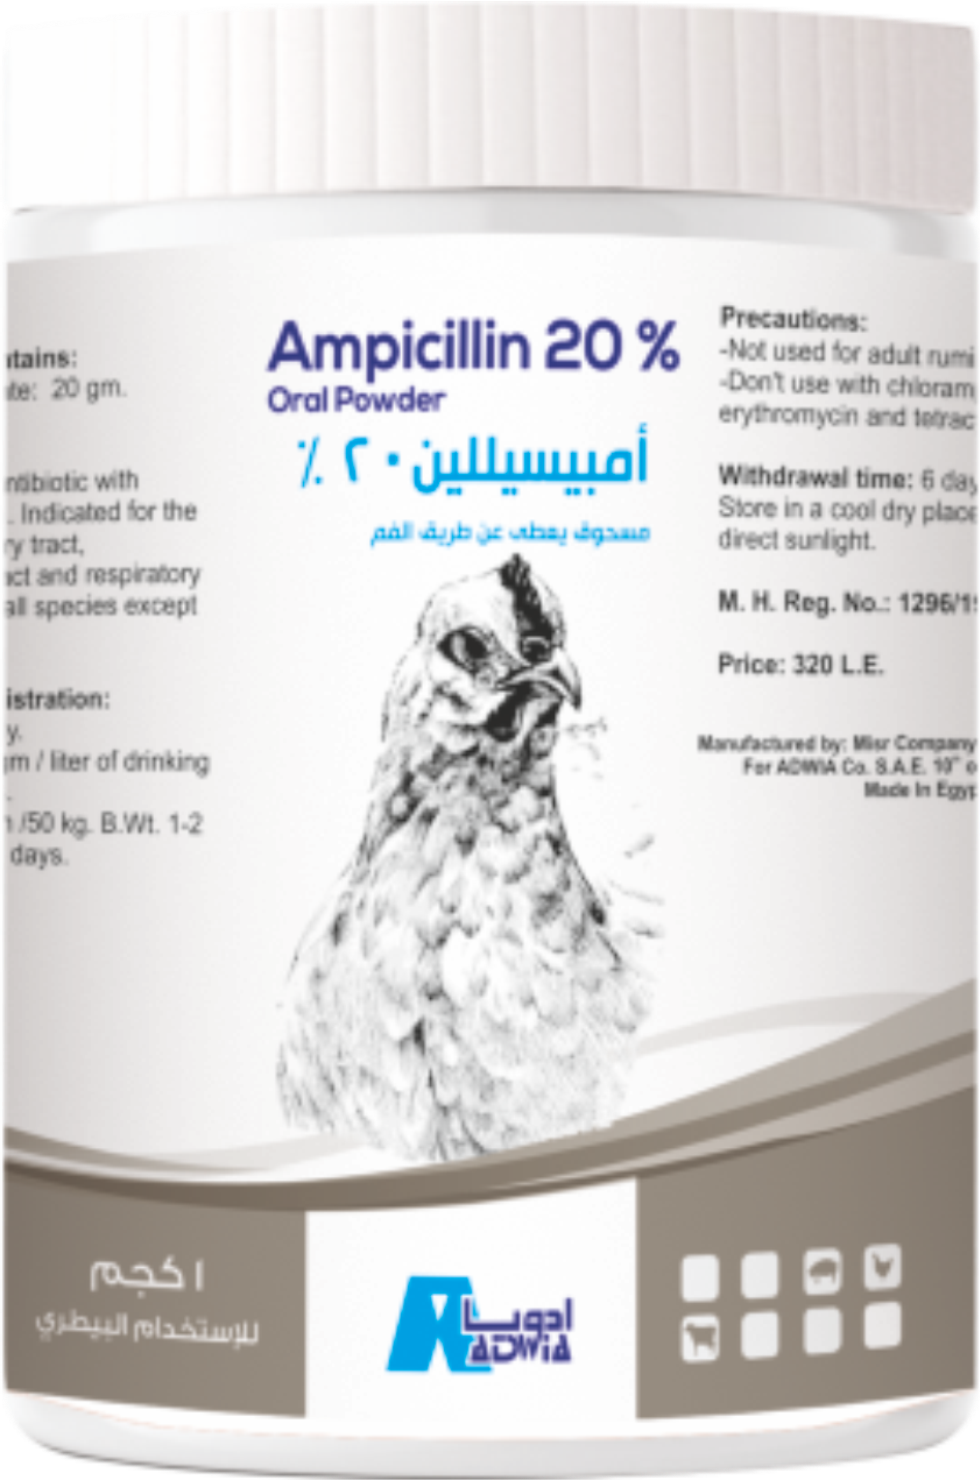 Ampicillin-Adwia